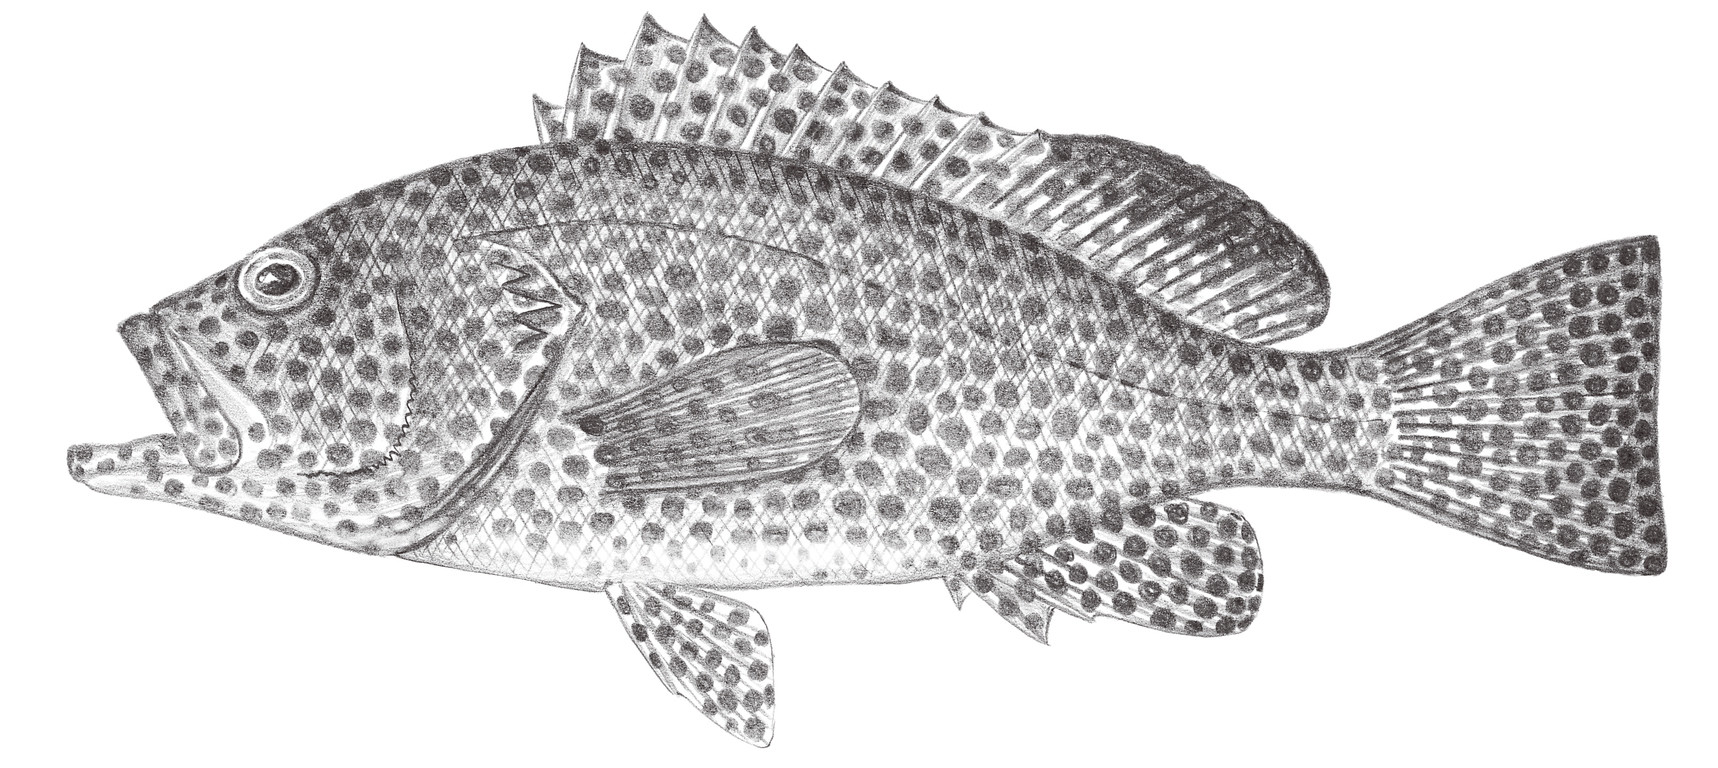 1021.	綠斑石斑魚 Epinephelus chlorostigma (Valenciennes, 1828)